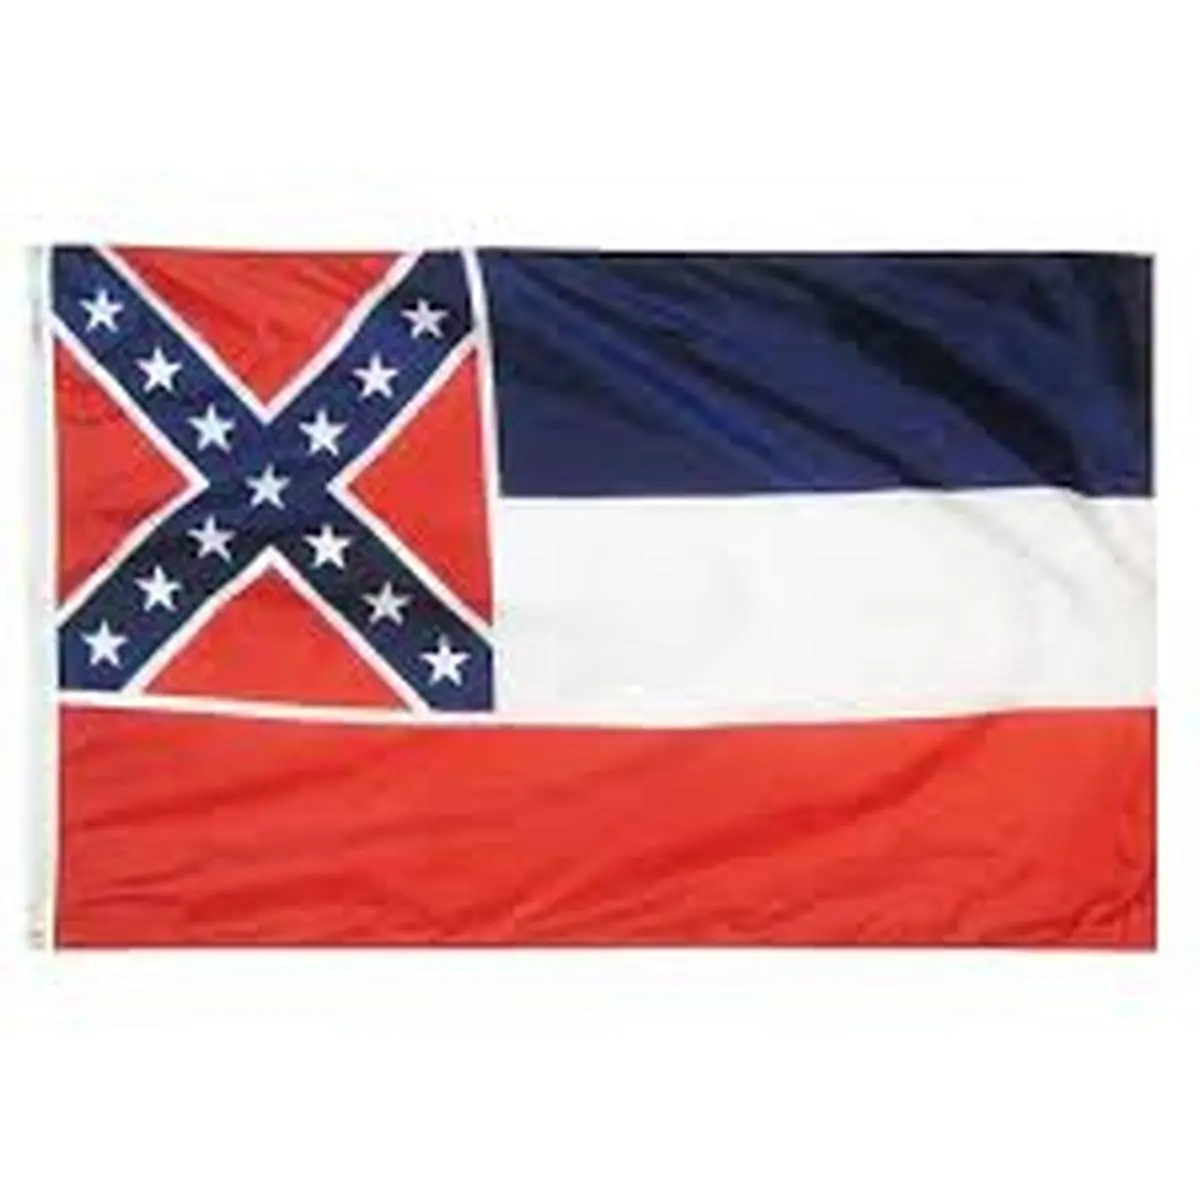  یک ایالت آمریکا برای حذف نماد برده داری پرچم خود را تغییر می دهد.